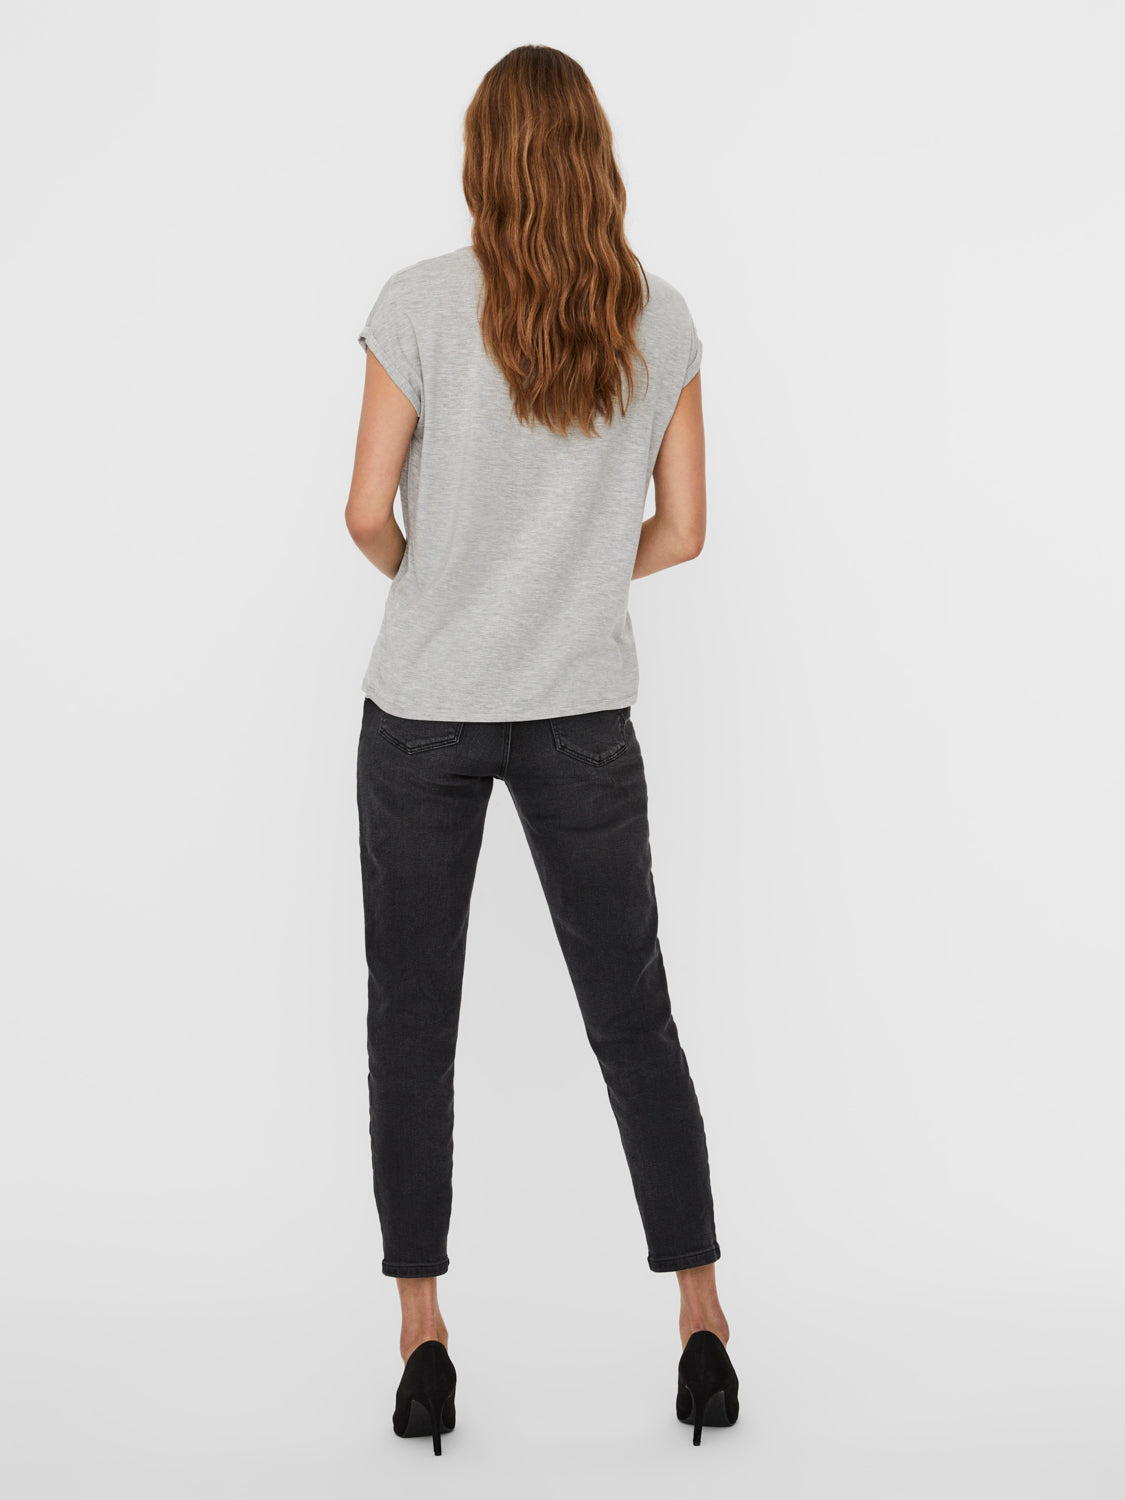 Sehr beliebter Online-Verkauf! VMAVA T-Shirt - – Grey Melange MODA Light VERO Lidköping